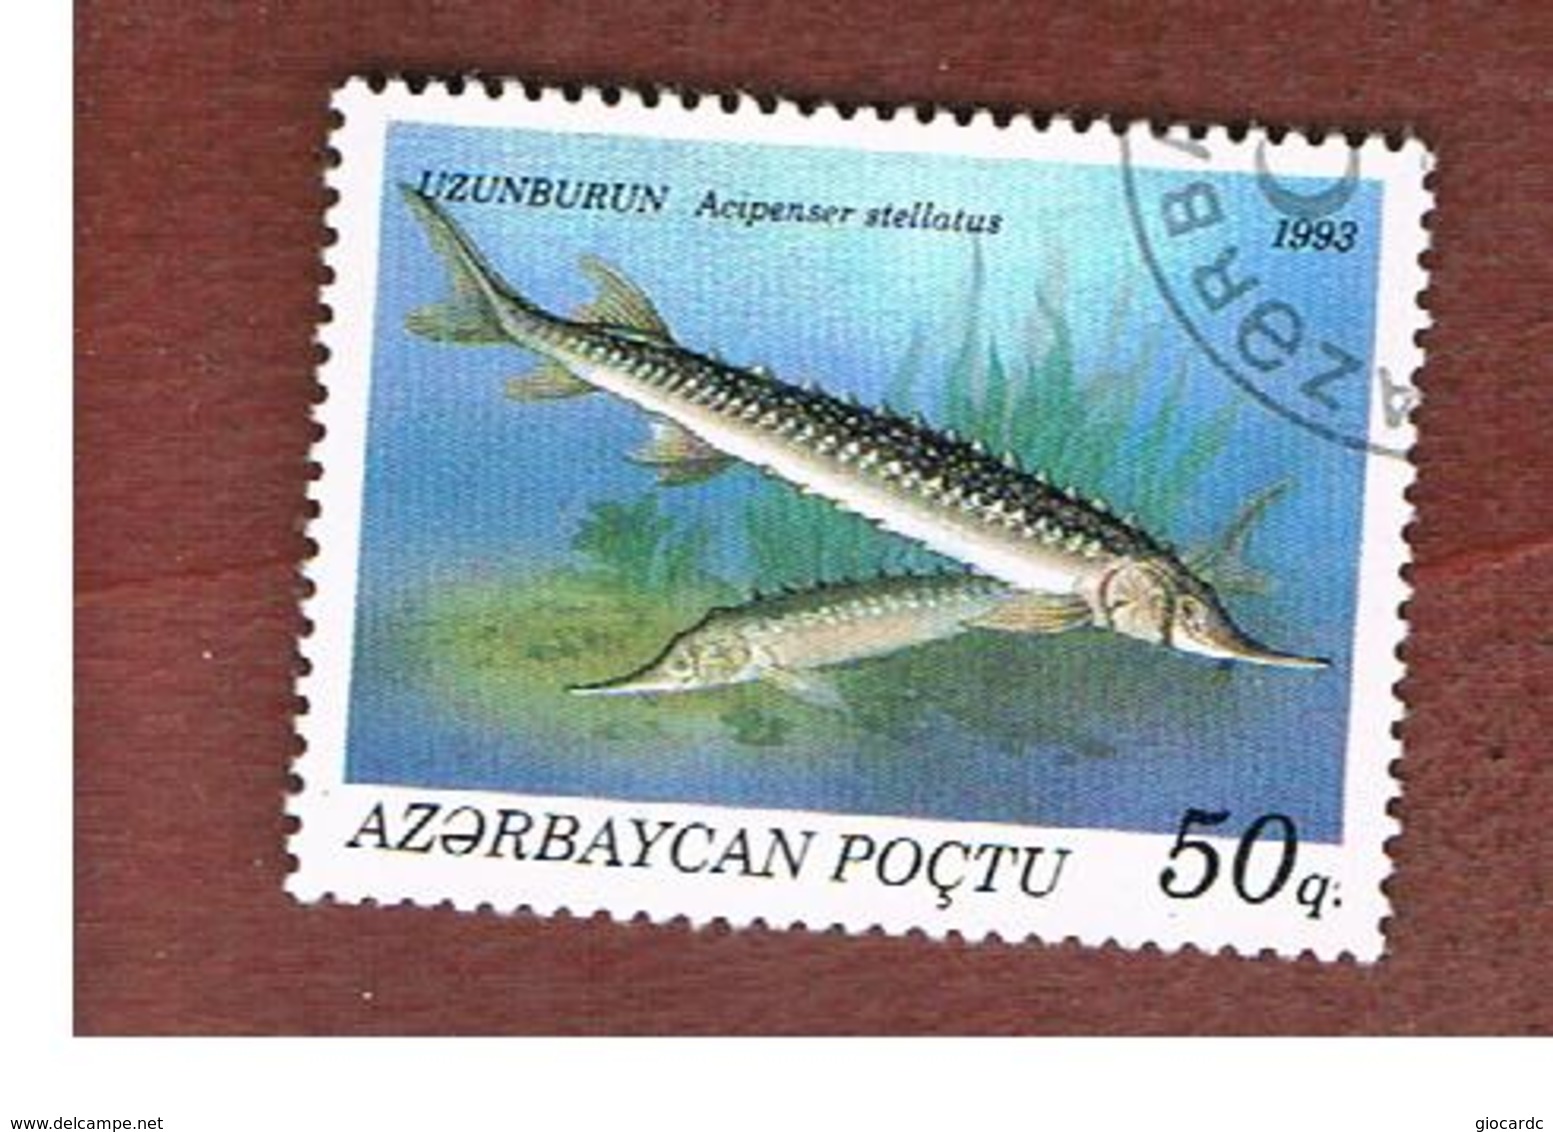 AZERBAIJAN   - SG 113 -  1993 FISHES: STELLATE STURGEON  -   USED - Azerbaïjan